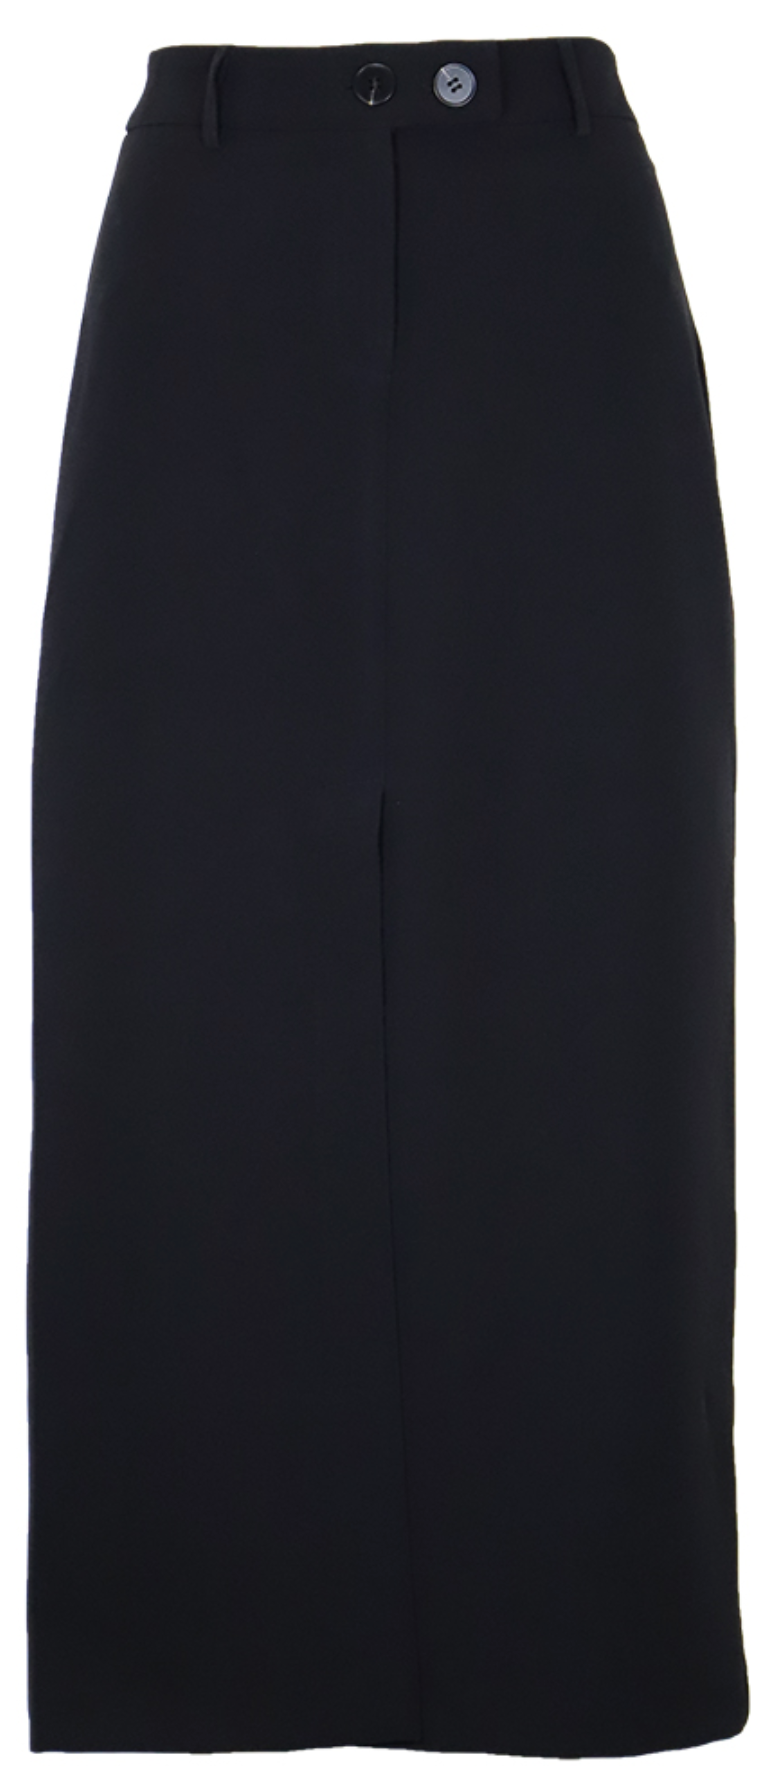 Zelie Midi Skirt in Black